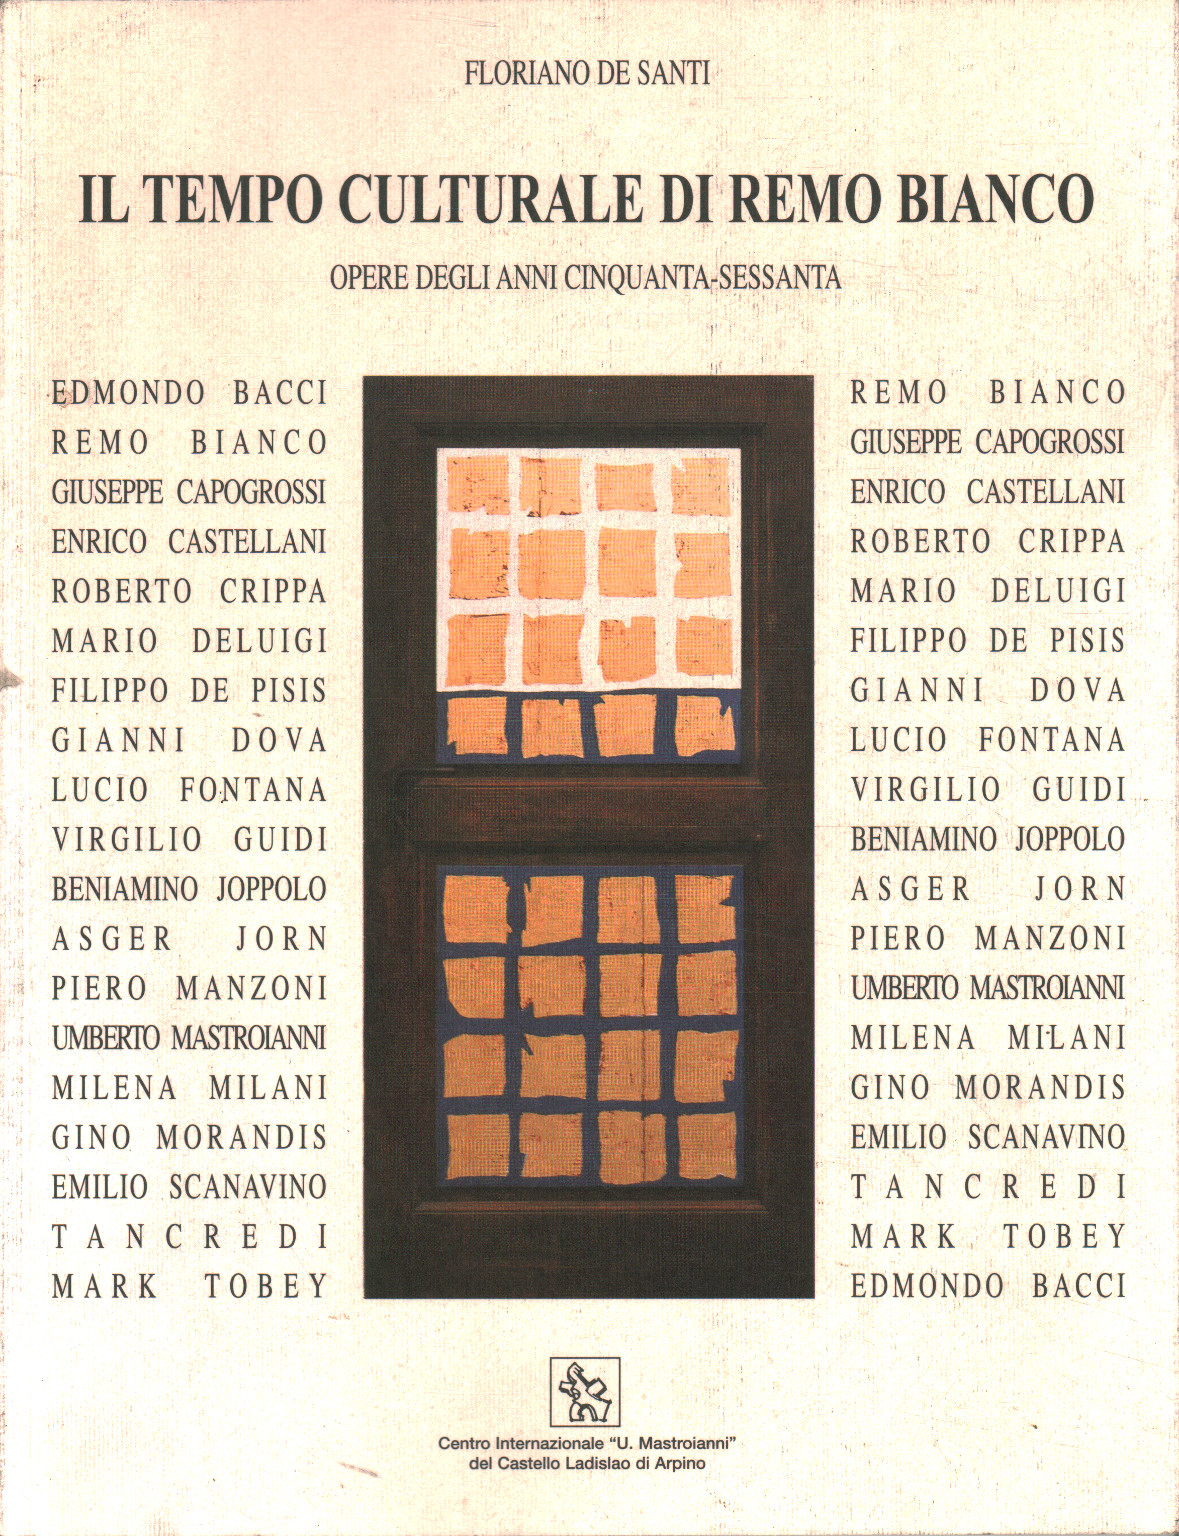 El tiempo cultural de Remo Bianco. Obras del ann, Floriano De Santi